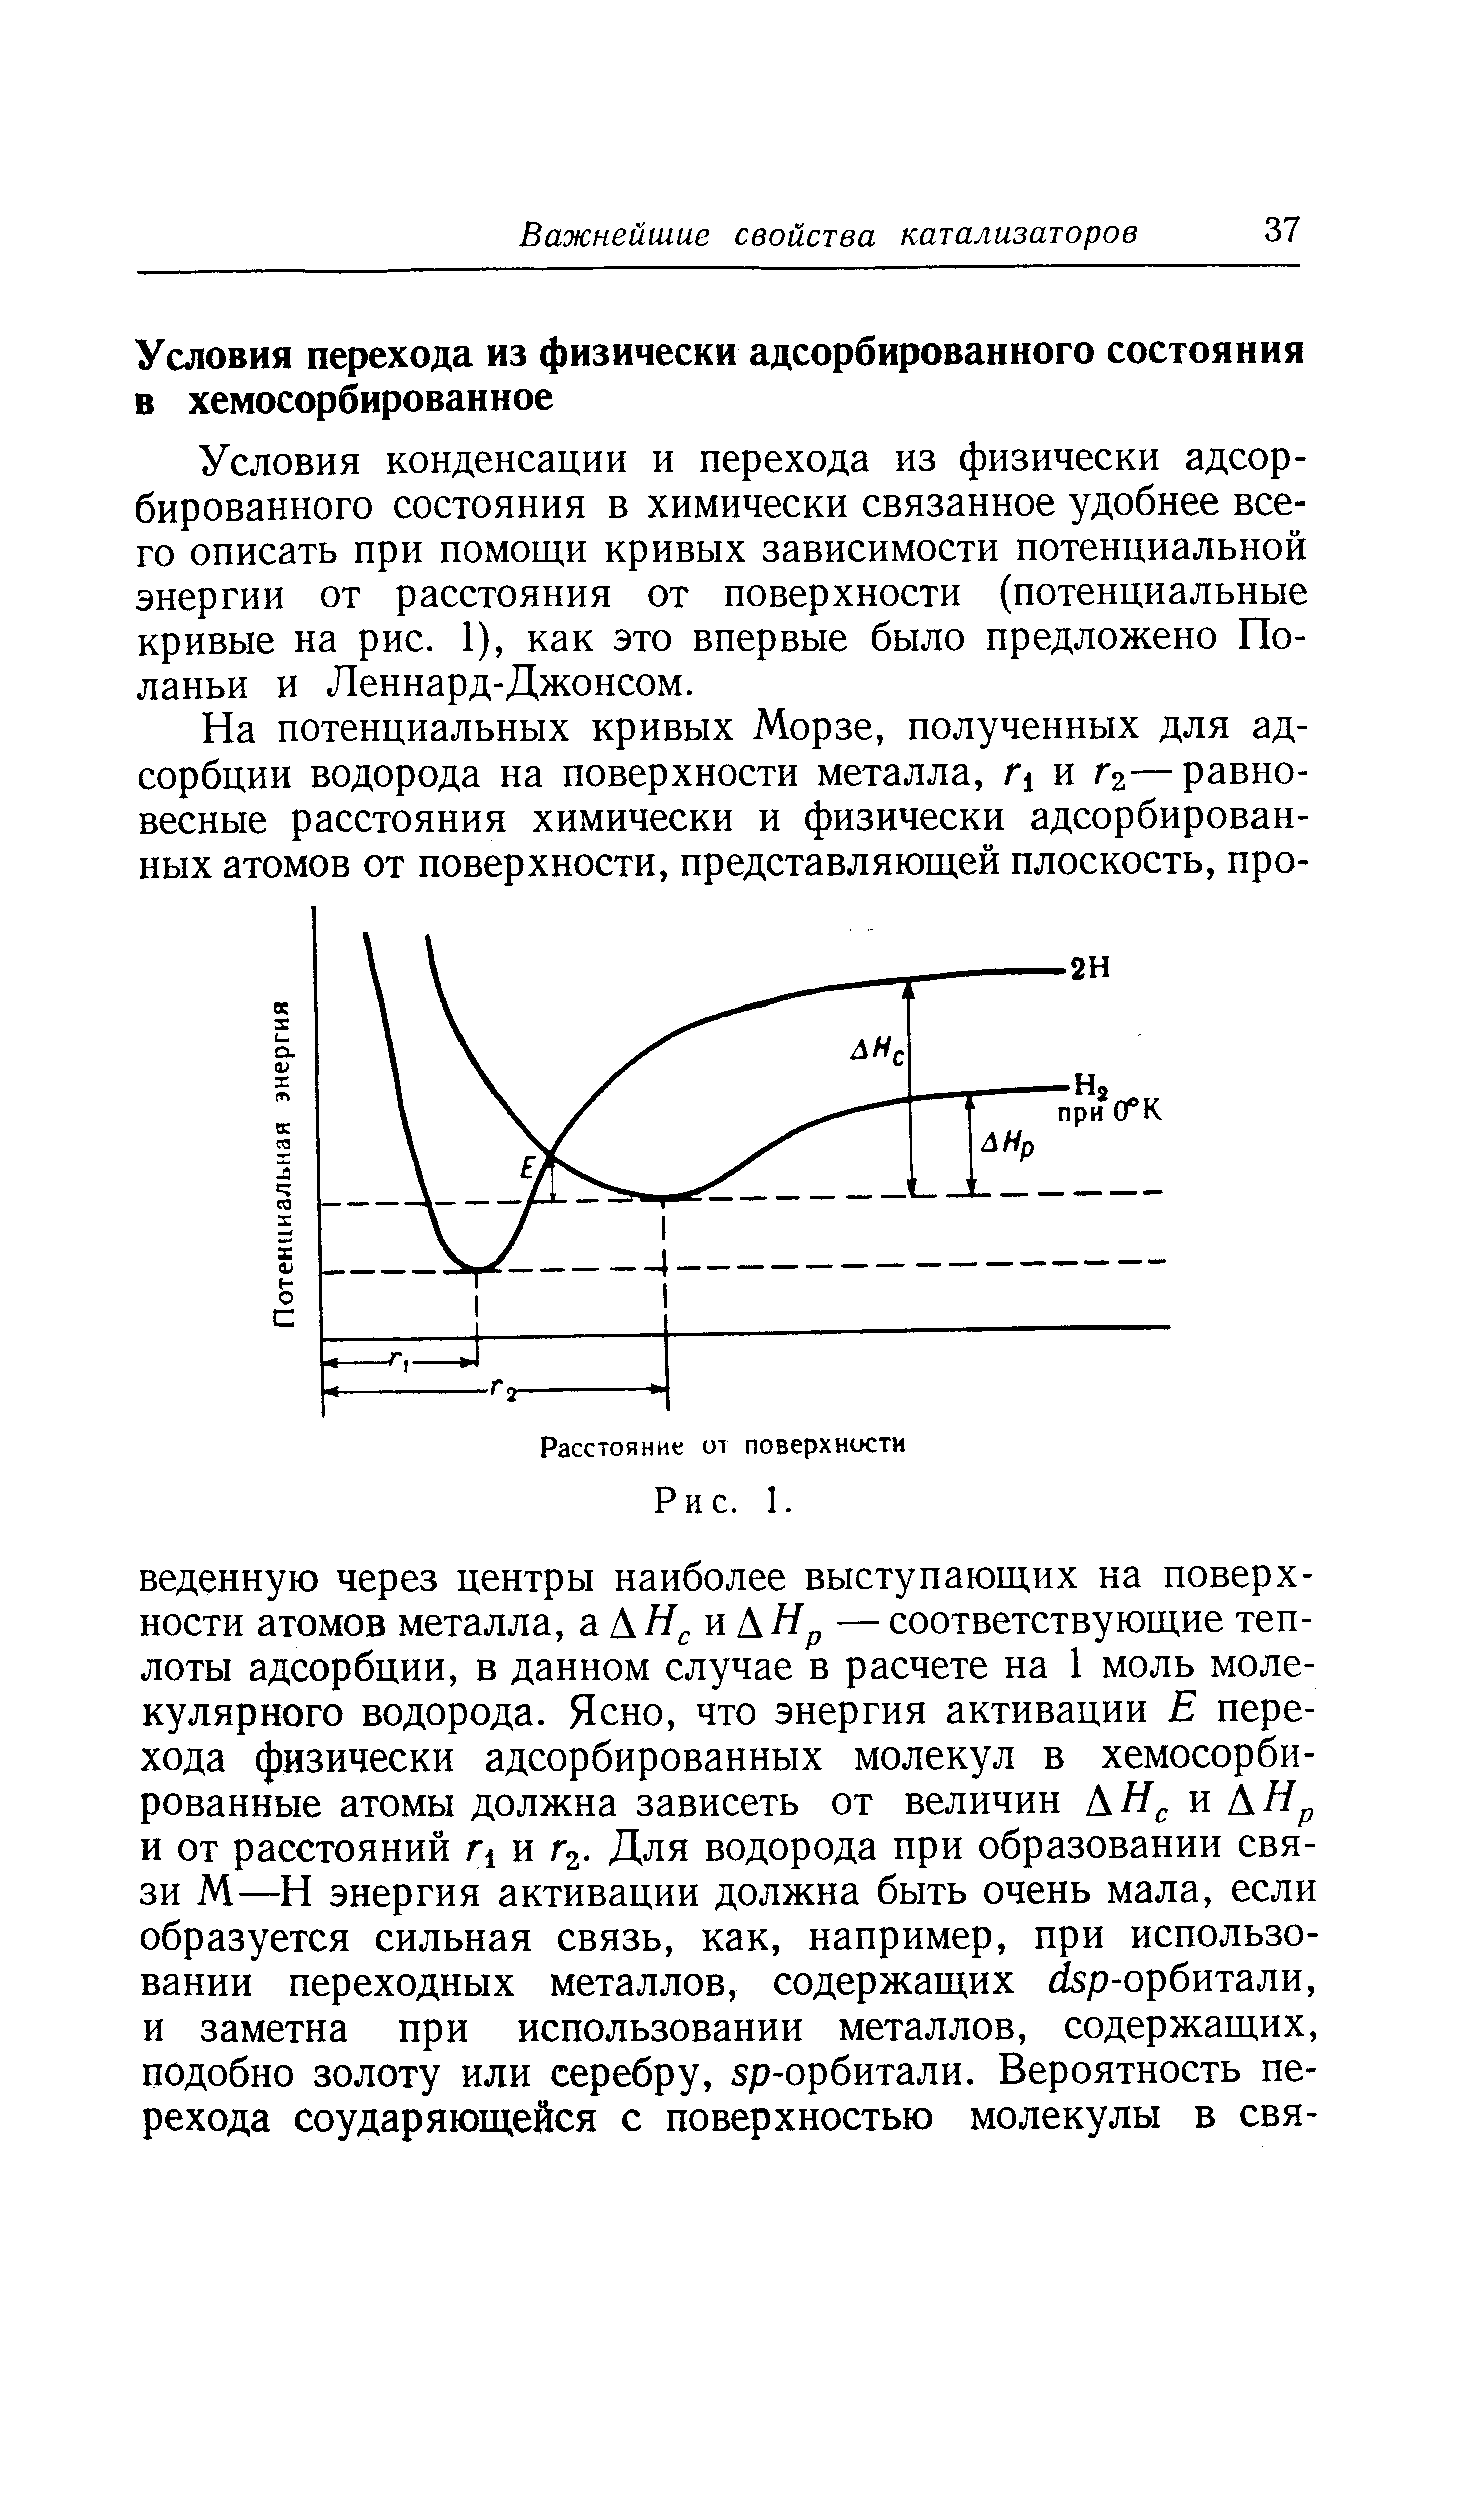 Условия конденсации и перехода из физически адсорбированного состояния в химически связанное удобнее всего описать при помощи кривых зависимости потенциальной энергии от расстояния от поверхности (потенциальные кривые на рис. 1), как это впервые было предложено Поланьи и Леннард-Джонсом.